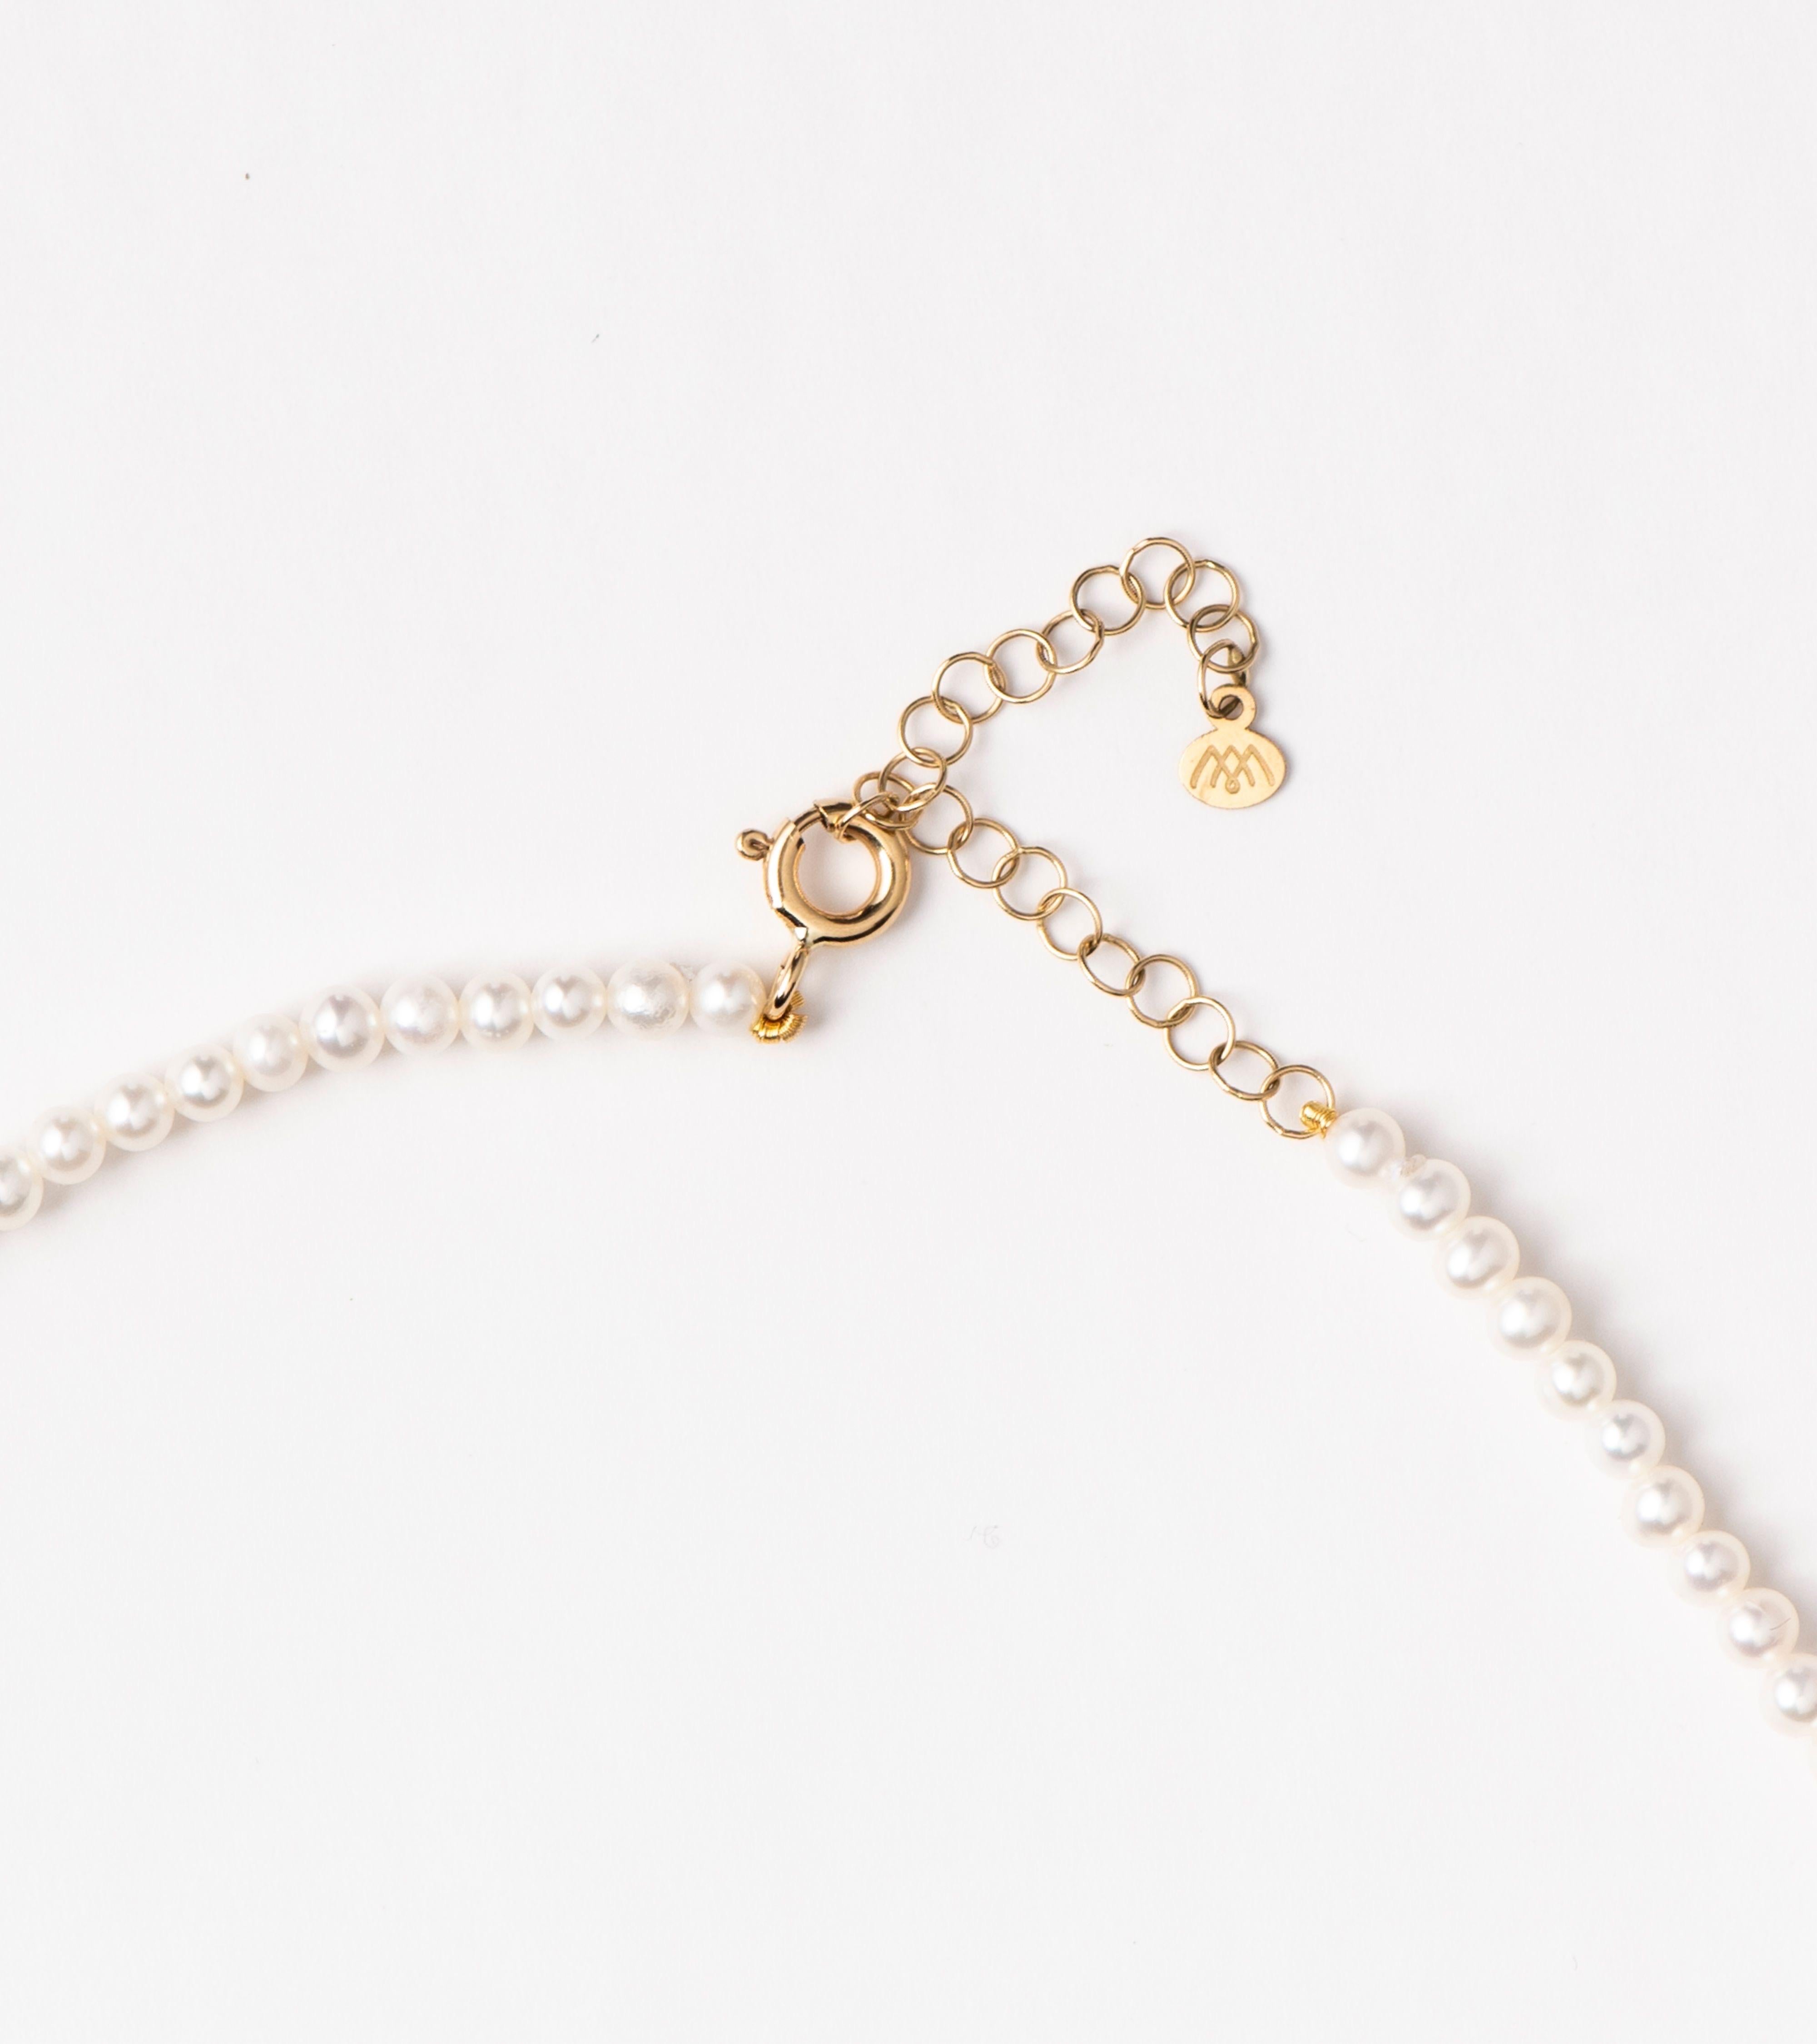 Notre collier à breloque baroque sur mini perles présente une perle en forme de goutte baroque suspendue à un rang de mini perles d'eau douce et accentuée par des diamants scintillants sur son crochet. Sa silhouette intemporelle, associée aux